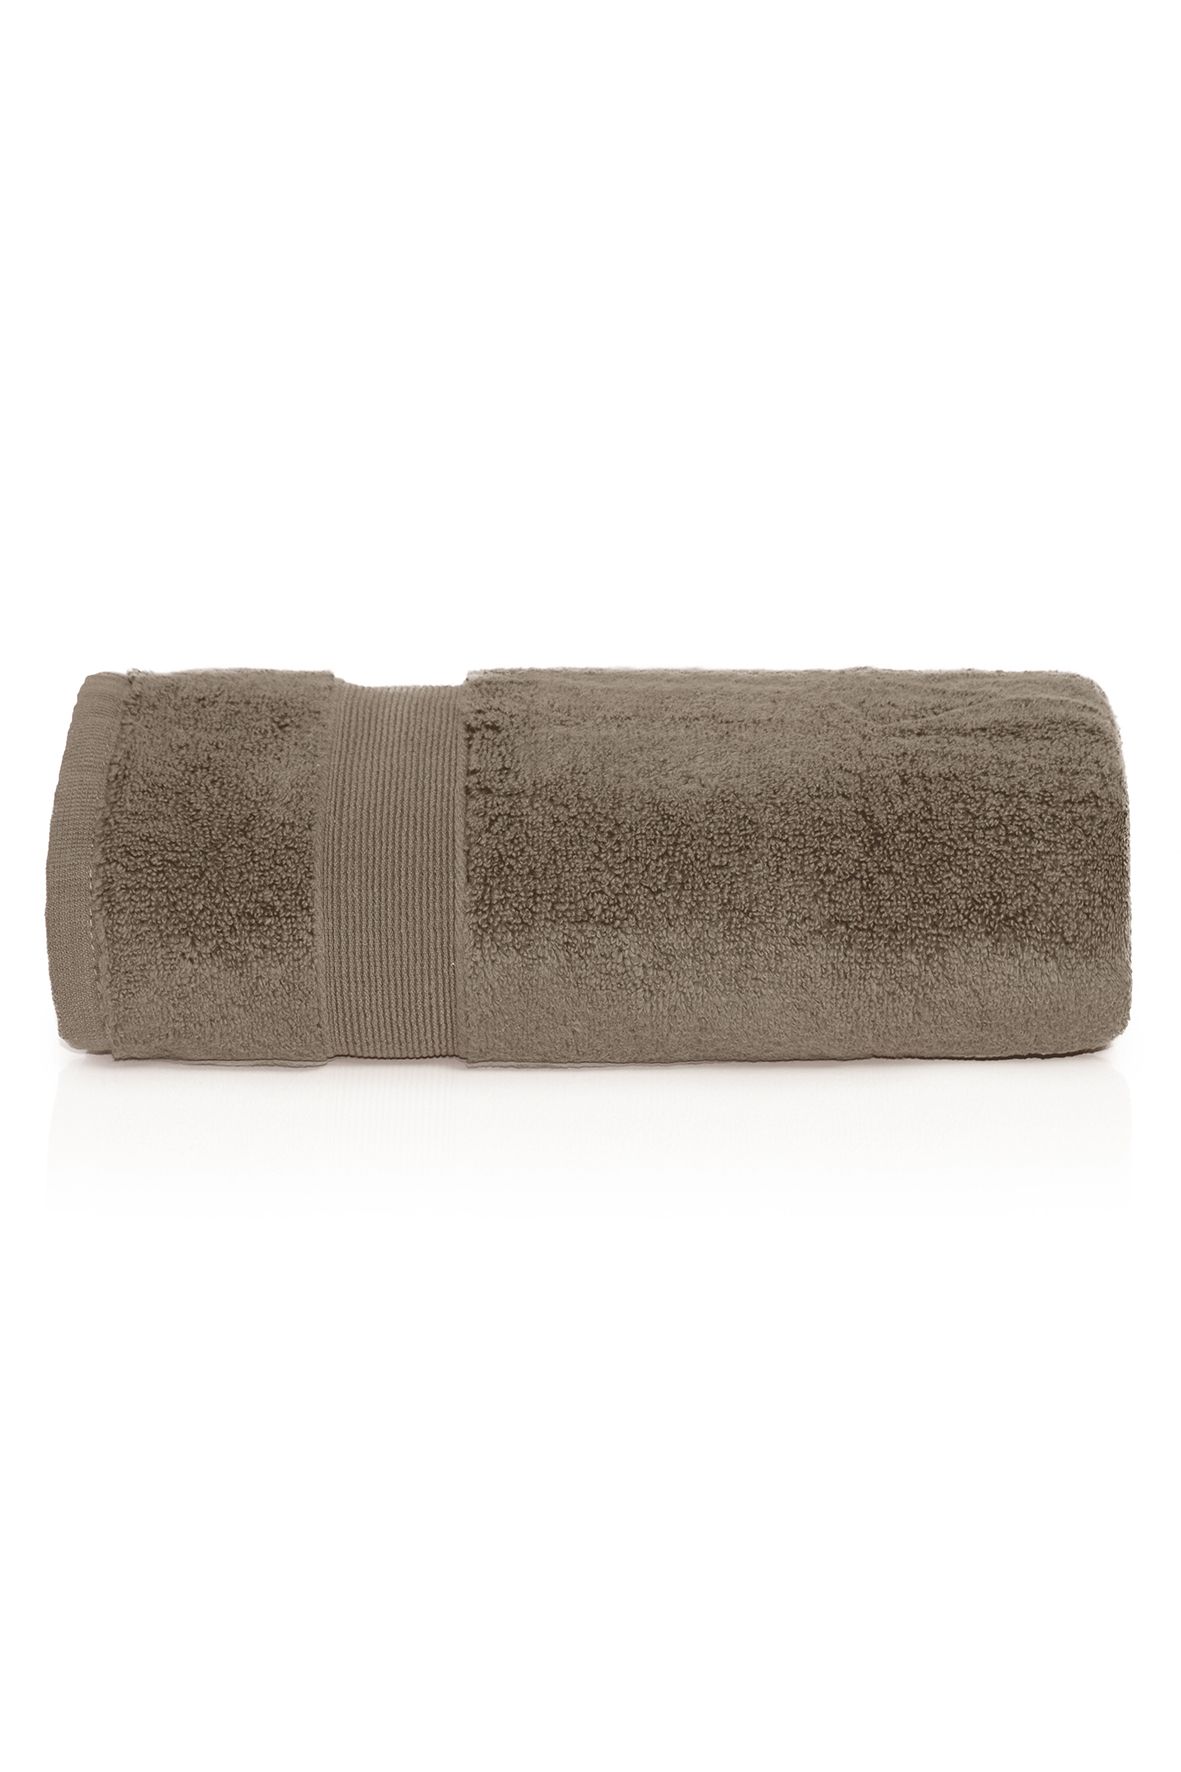 Ręcznik bawełniany Rocco brązowy - 50x90 cm